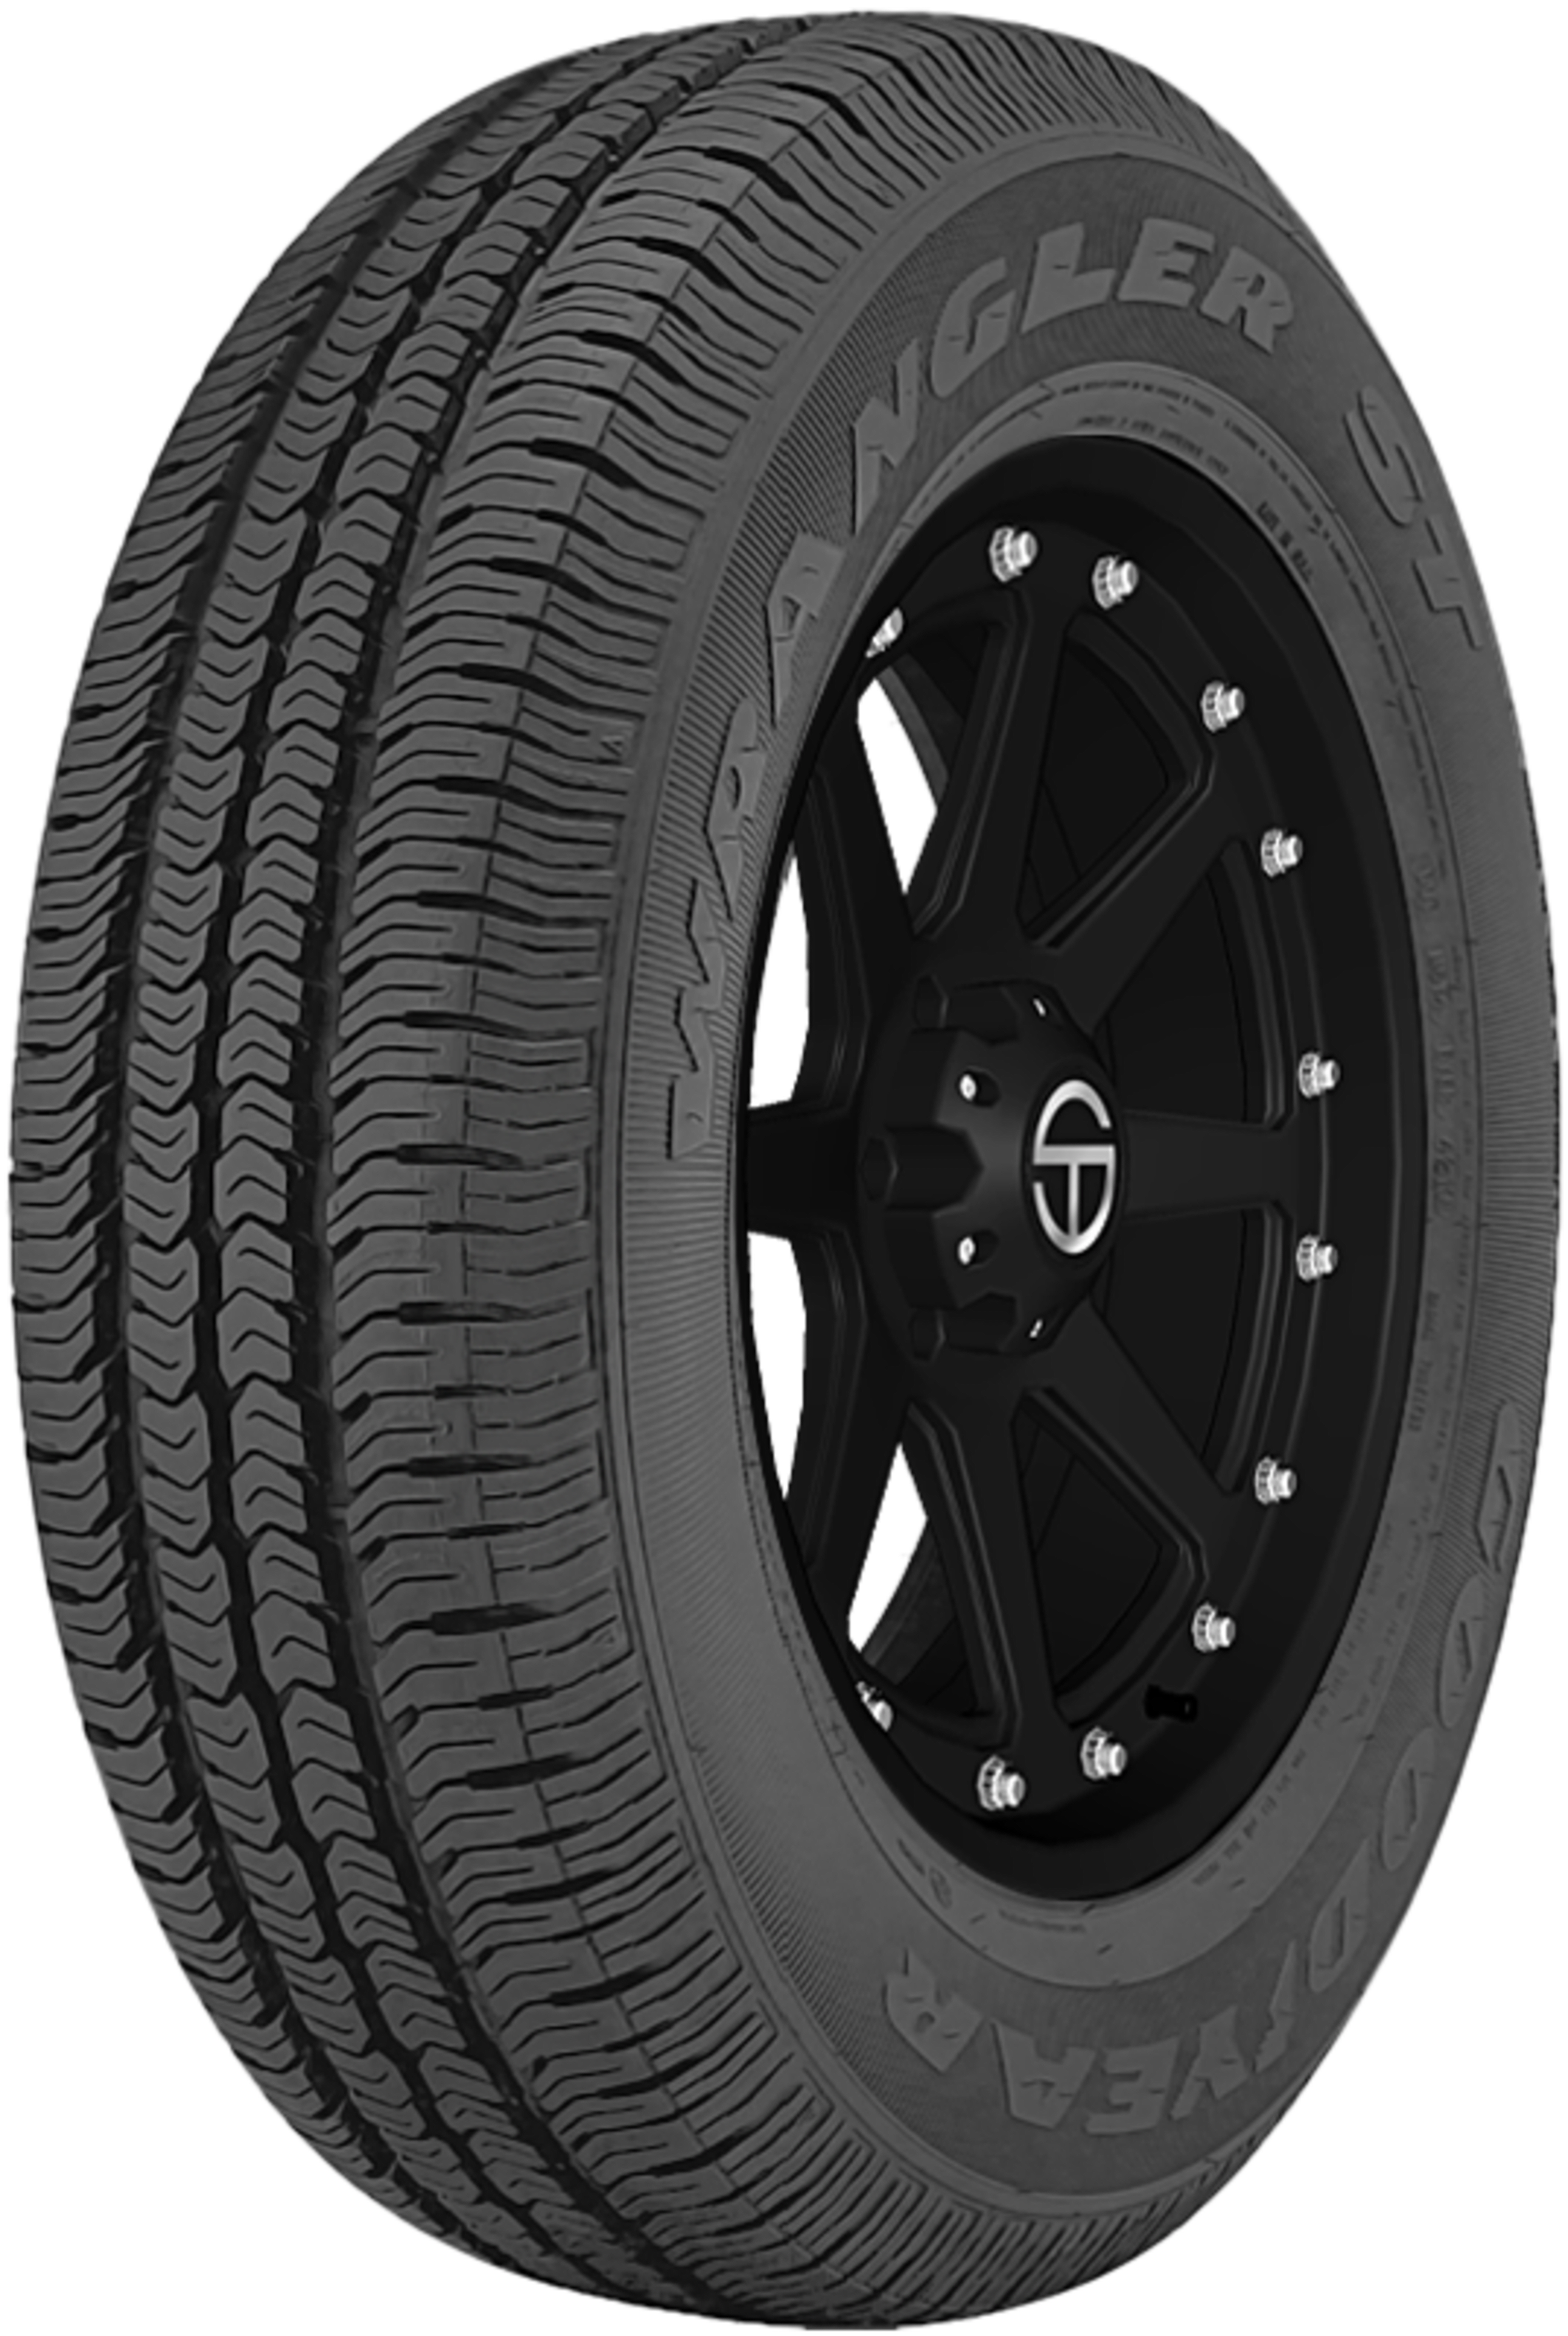 Buy Goodyear Wrangler ST Tires Online | SimpleTire